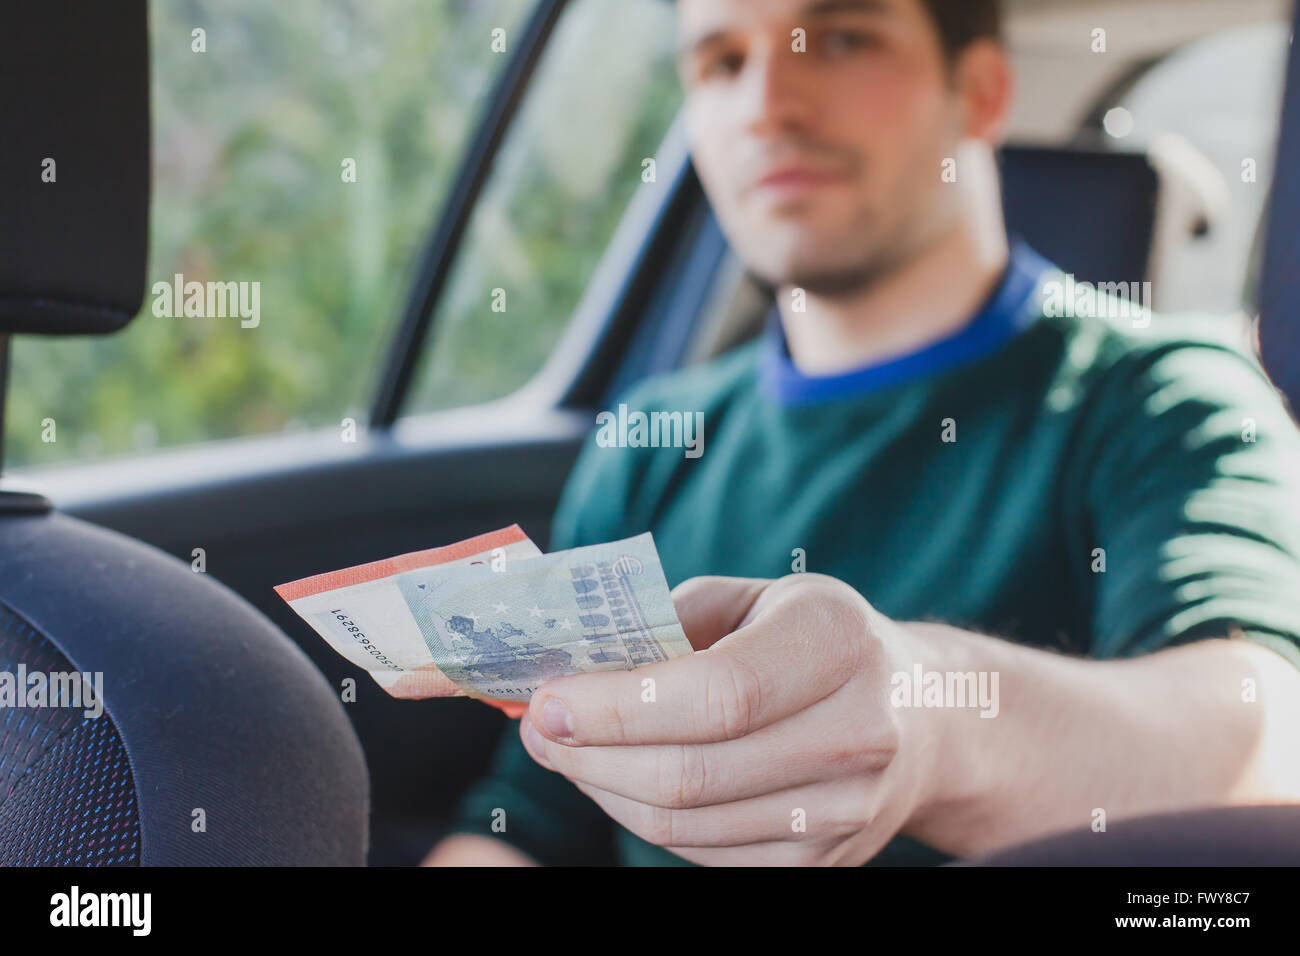 Pagare in contanti in taxi, primo piano del lato passeggero di dare i soldi per il conducente in auto Foto Stock